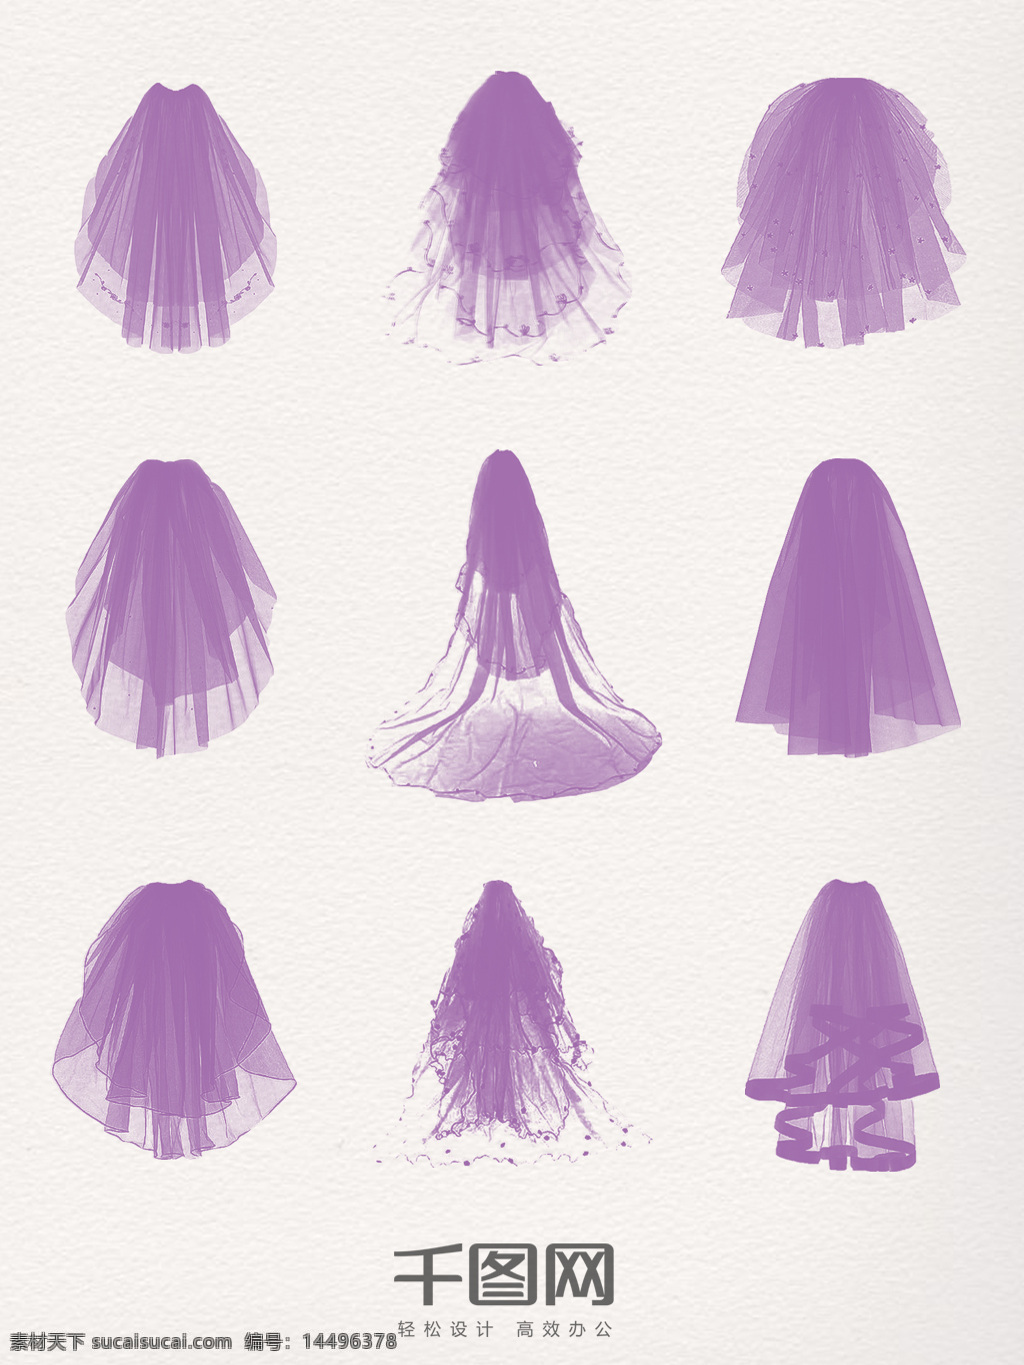 组 紫色 头 纱 装饰 图案 头纱 婚纱 创意 手绘 插画 新娘 婚礼结婚